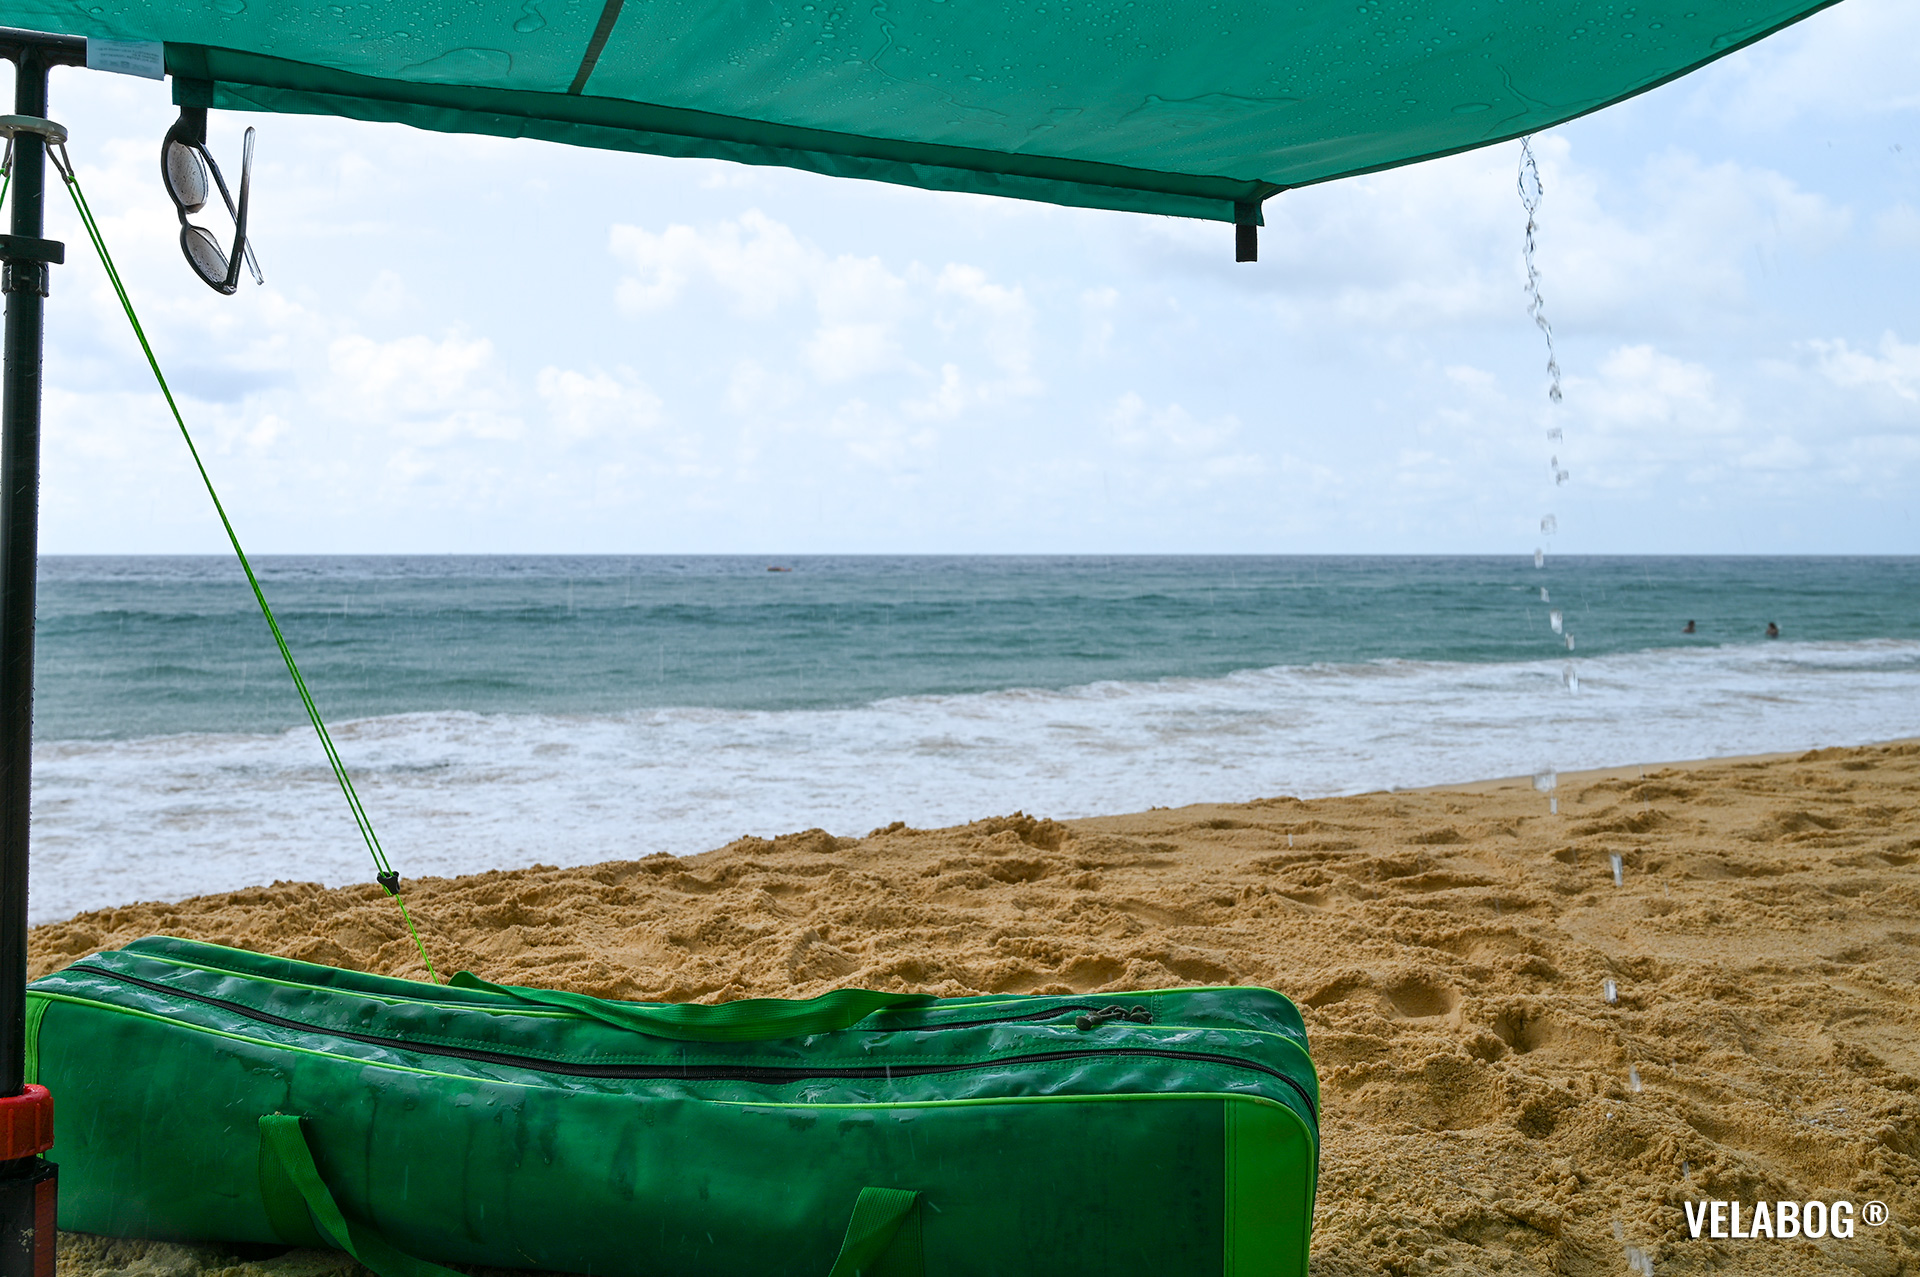 Солнечный парус Velabog «Breeze» зелёный на пляже в Таиланде во время тропического дождя. Лучшее укрытие от солнца и дождя на пляже. Вариант установки при слишком слабом или порывистом ветре или если ветра нет. Вид снизу, детали.